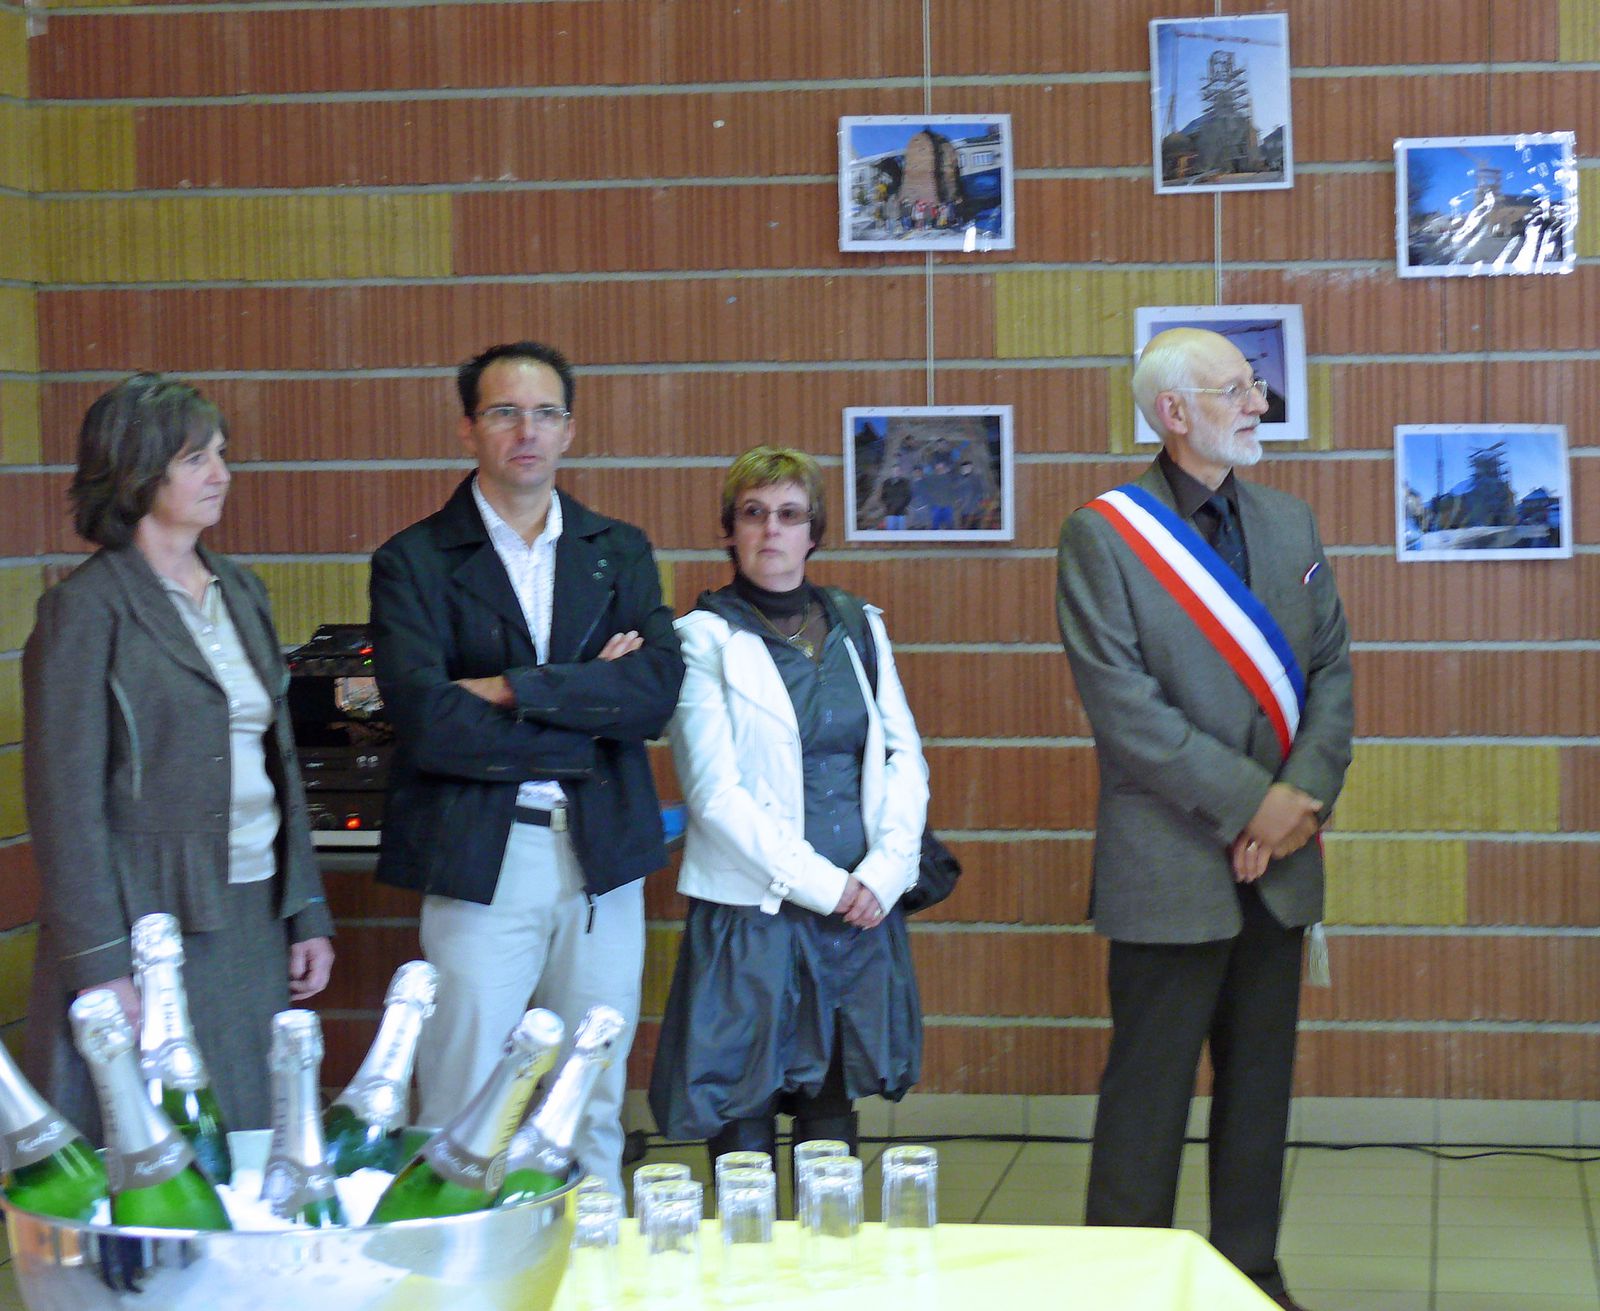 Le 18 septembre 2010, la médiathèque d'Arreux a été inaugurée par Robert COLSON Maire de Arreux, le Conseil Municipal, le Sénateur-président du conseil Général, Mme Joëlle Barat vice/présidente de la Région  et du Député Philippe Vuilqu